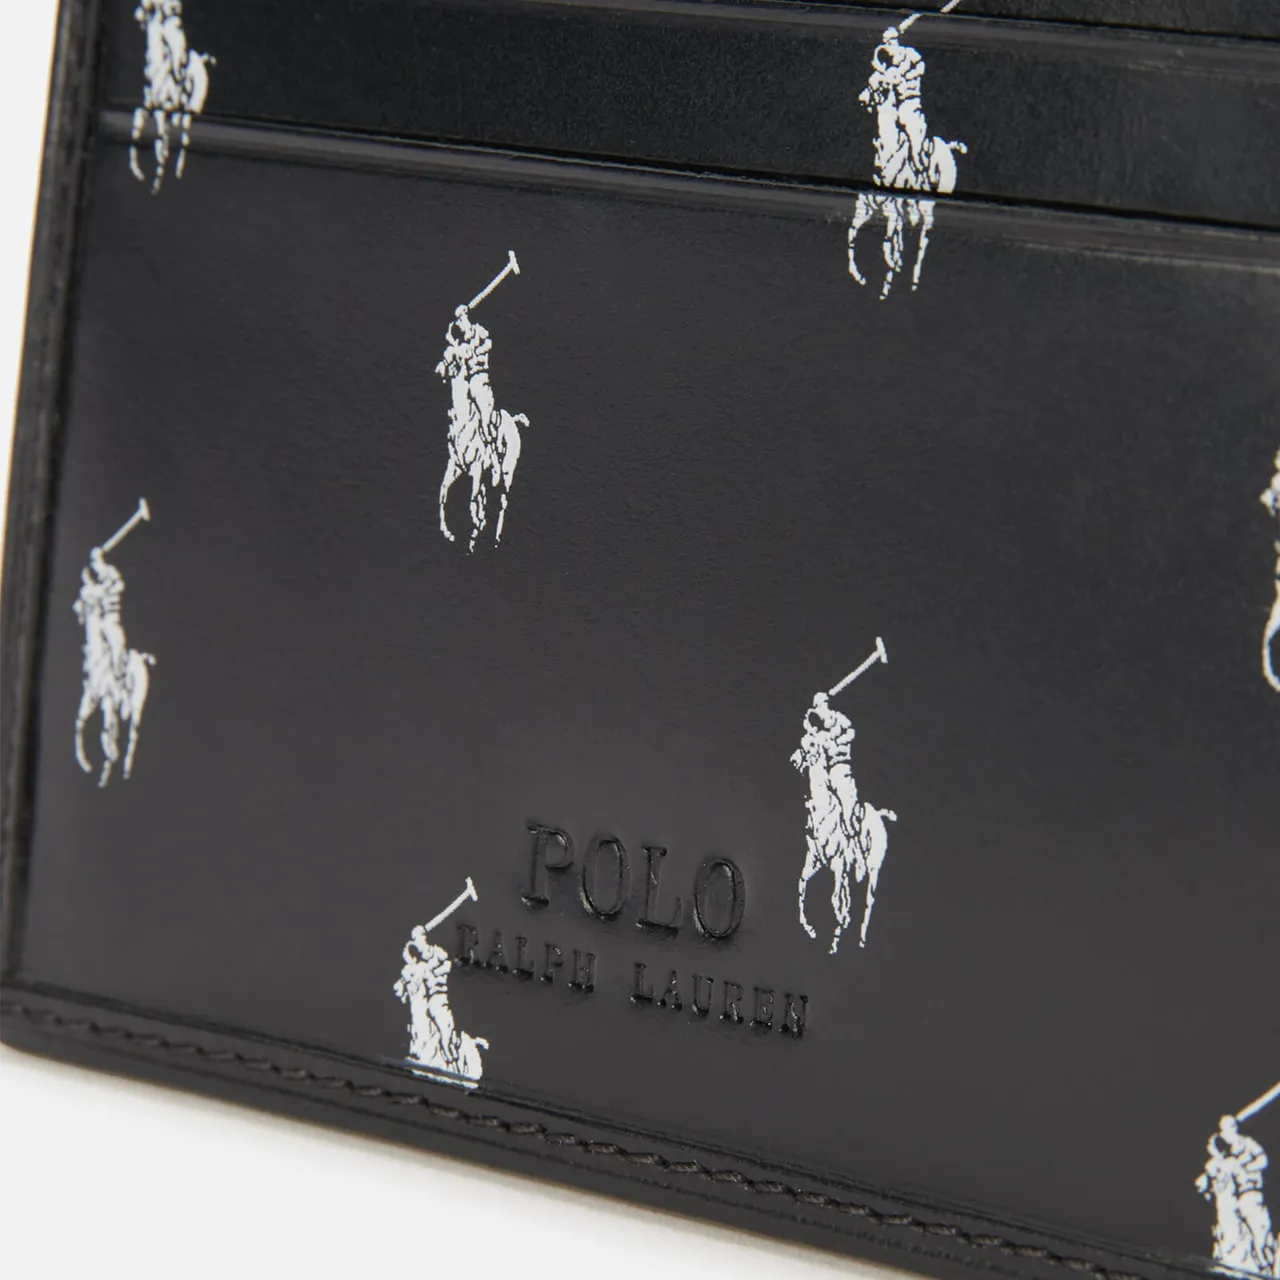 Polo Ralph Lauren Men's Small Polo Pony Cardholder - Black/White